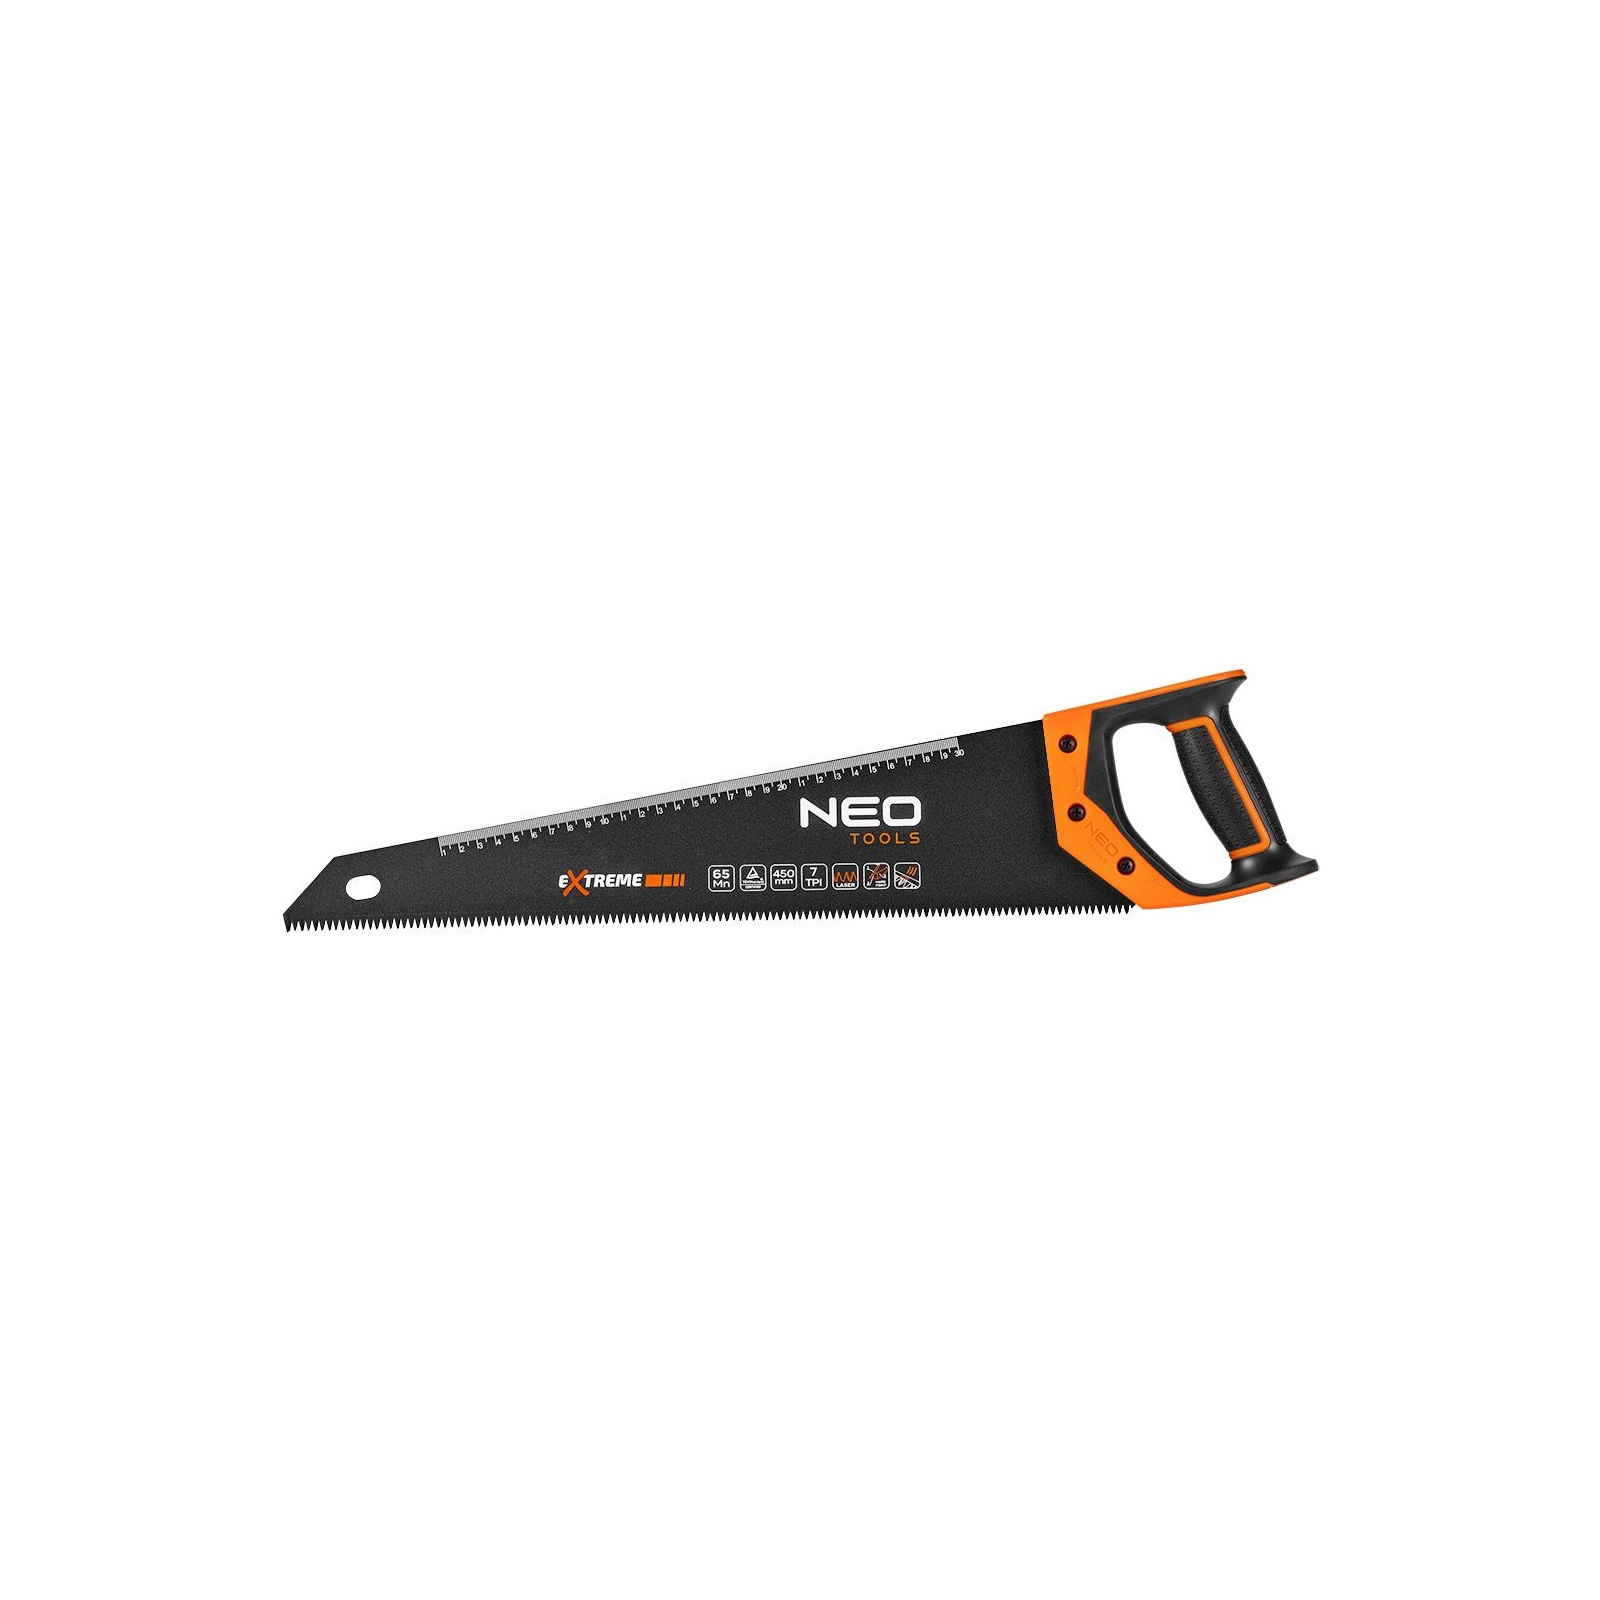 Ножовка Neo Tools по дереву, Extreme, 400 мм, 7TPI, PTFE (41-111)